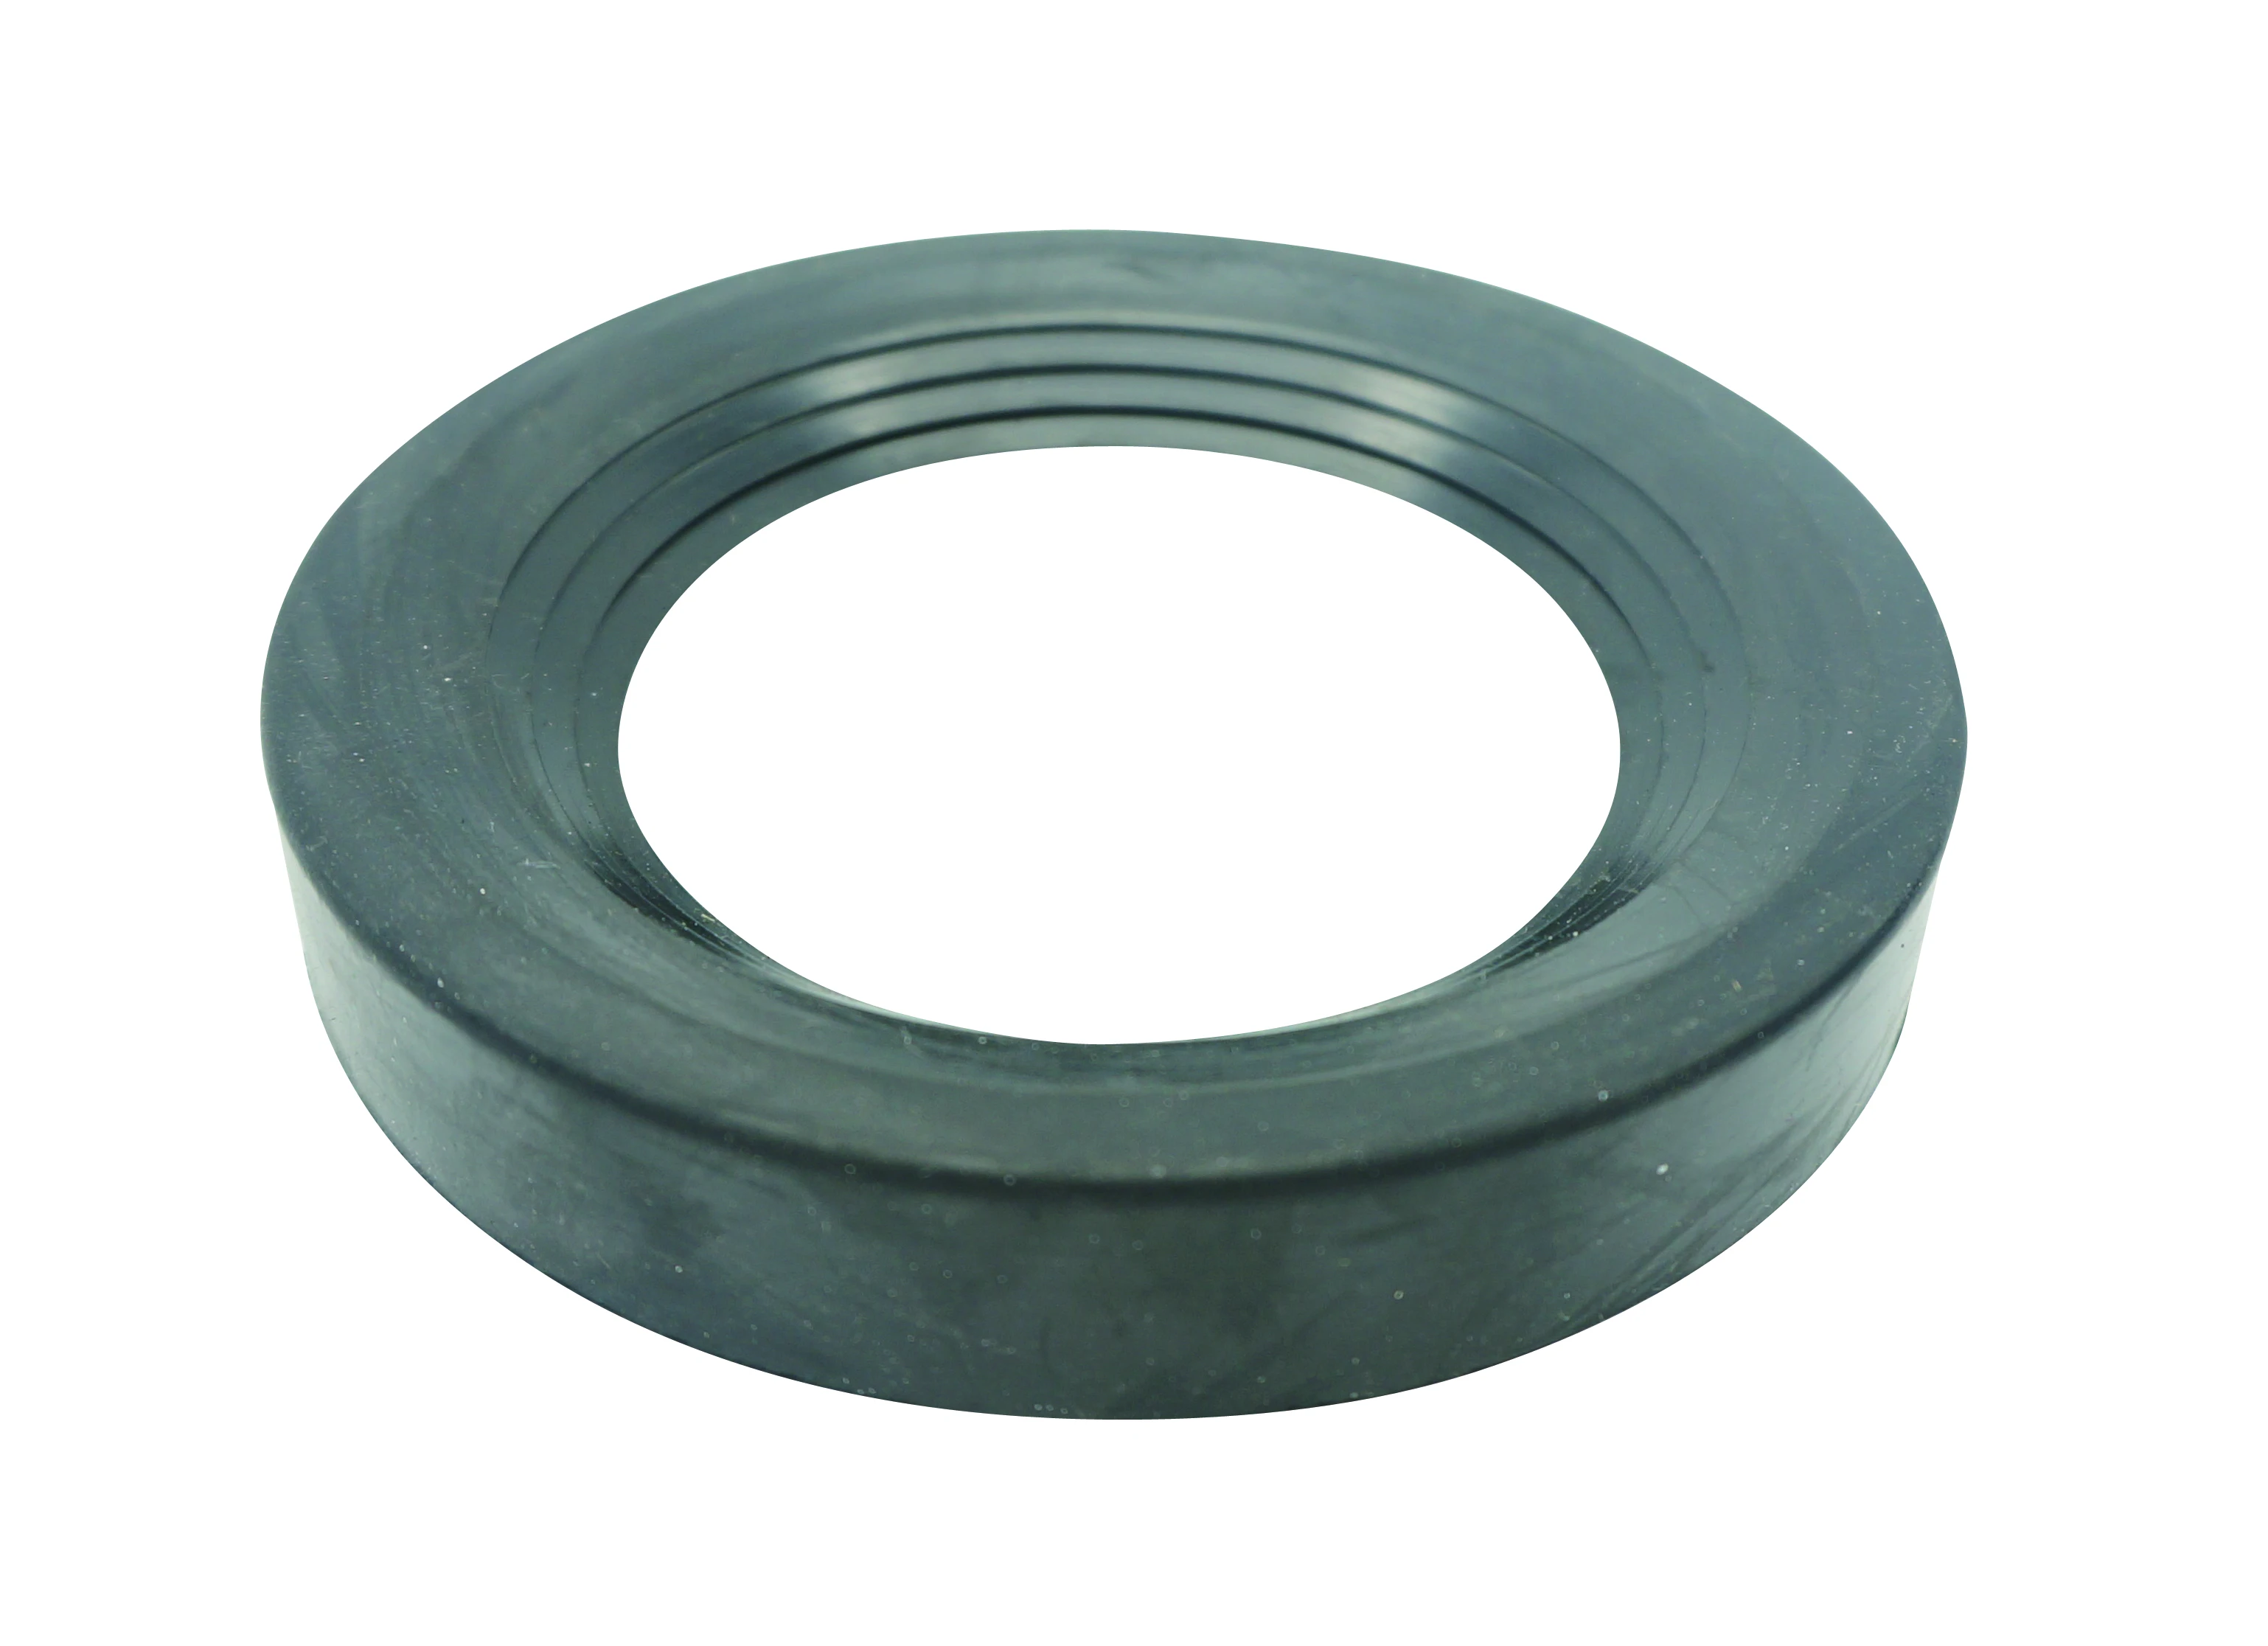 HT112 grey NBR bathroom  rubber seal  for bathroom  Inner diameter 65mm external diameter112mm